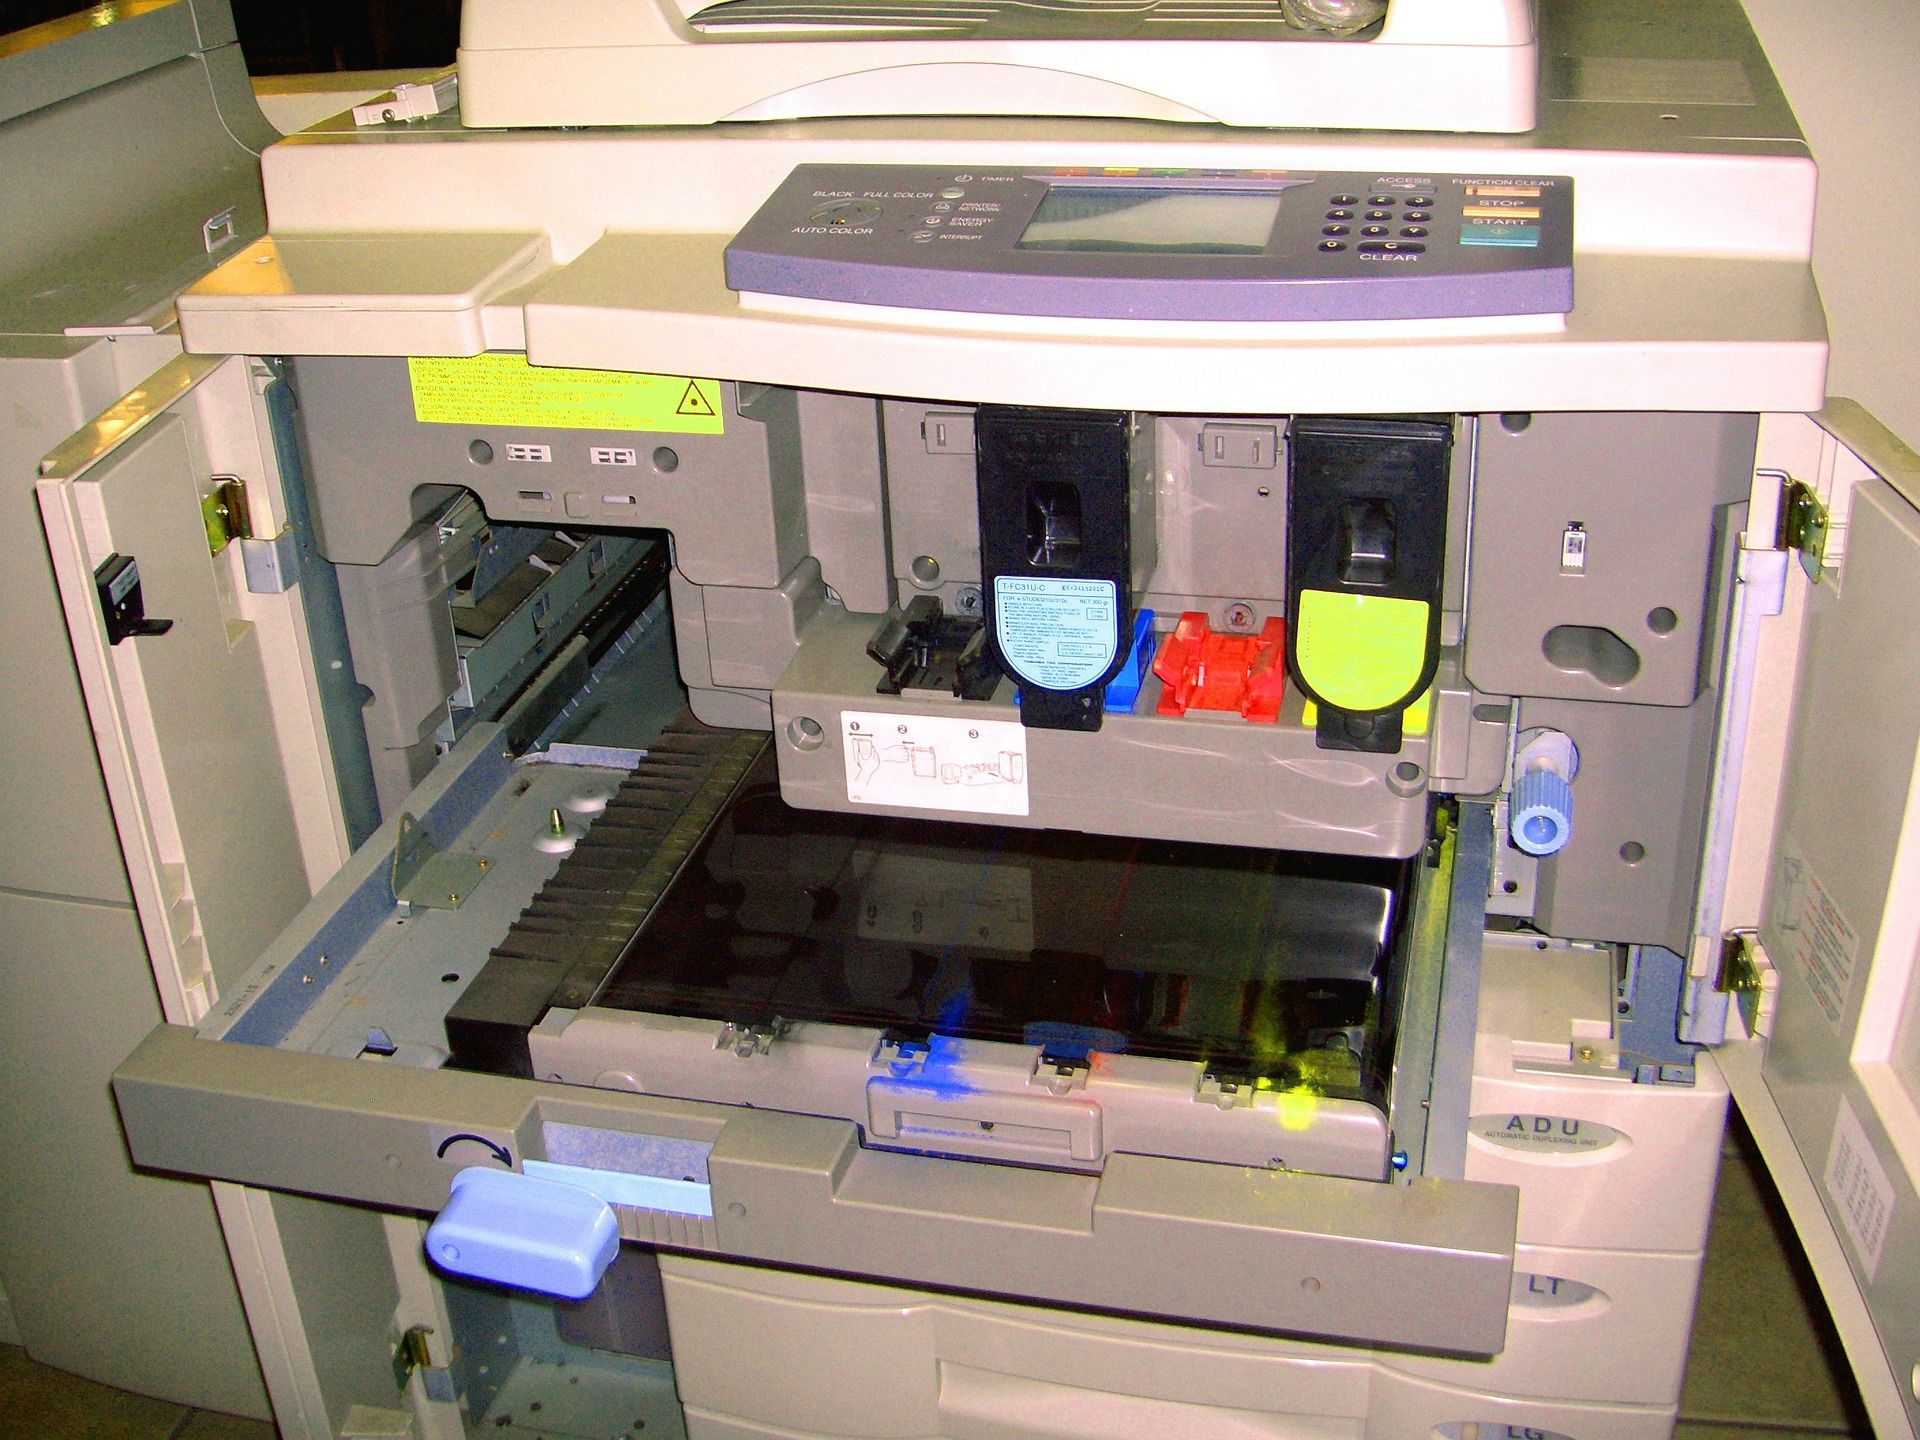 Jakie wyposażenie należy zakupić wraz z drukarką?